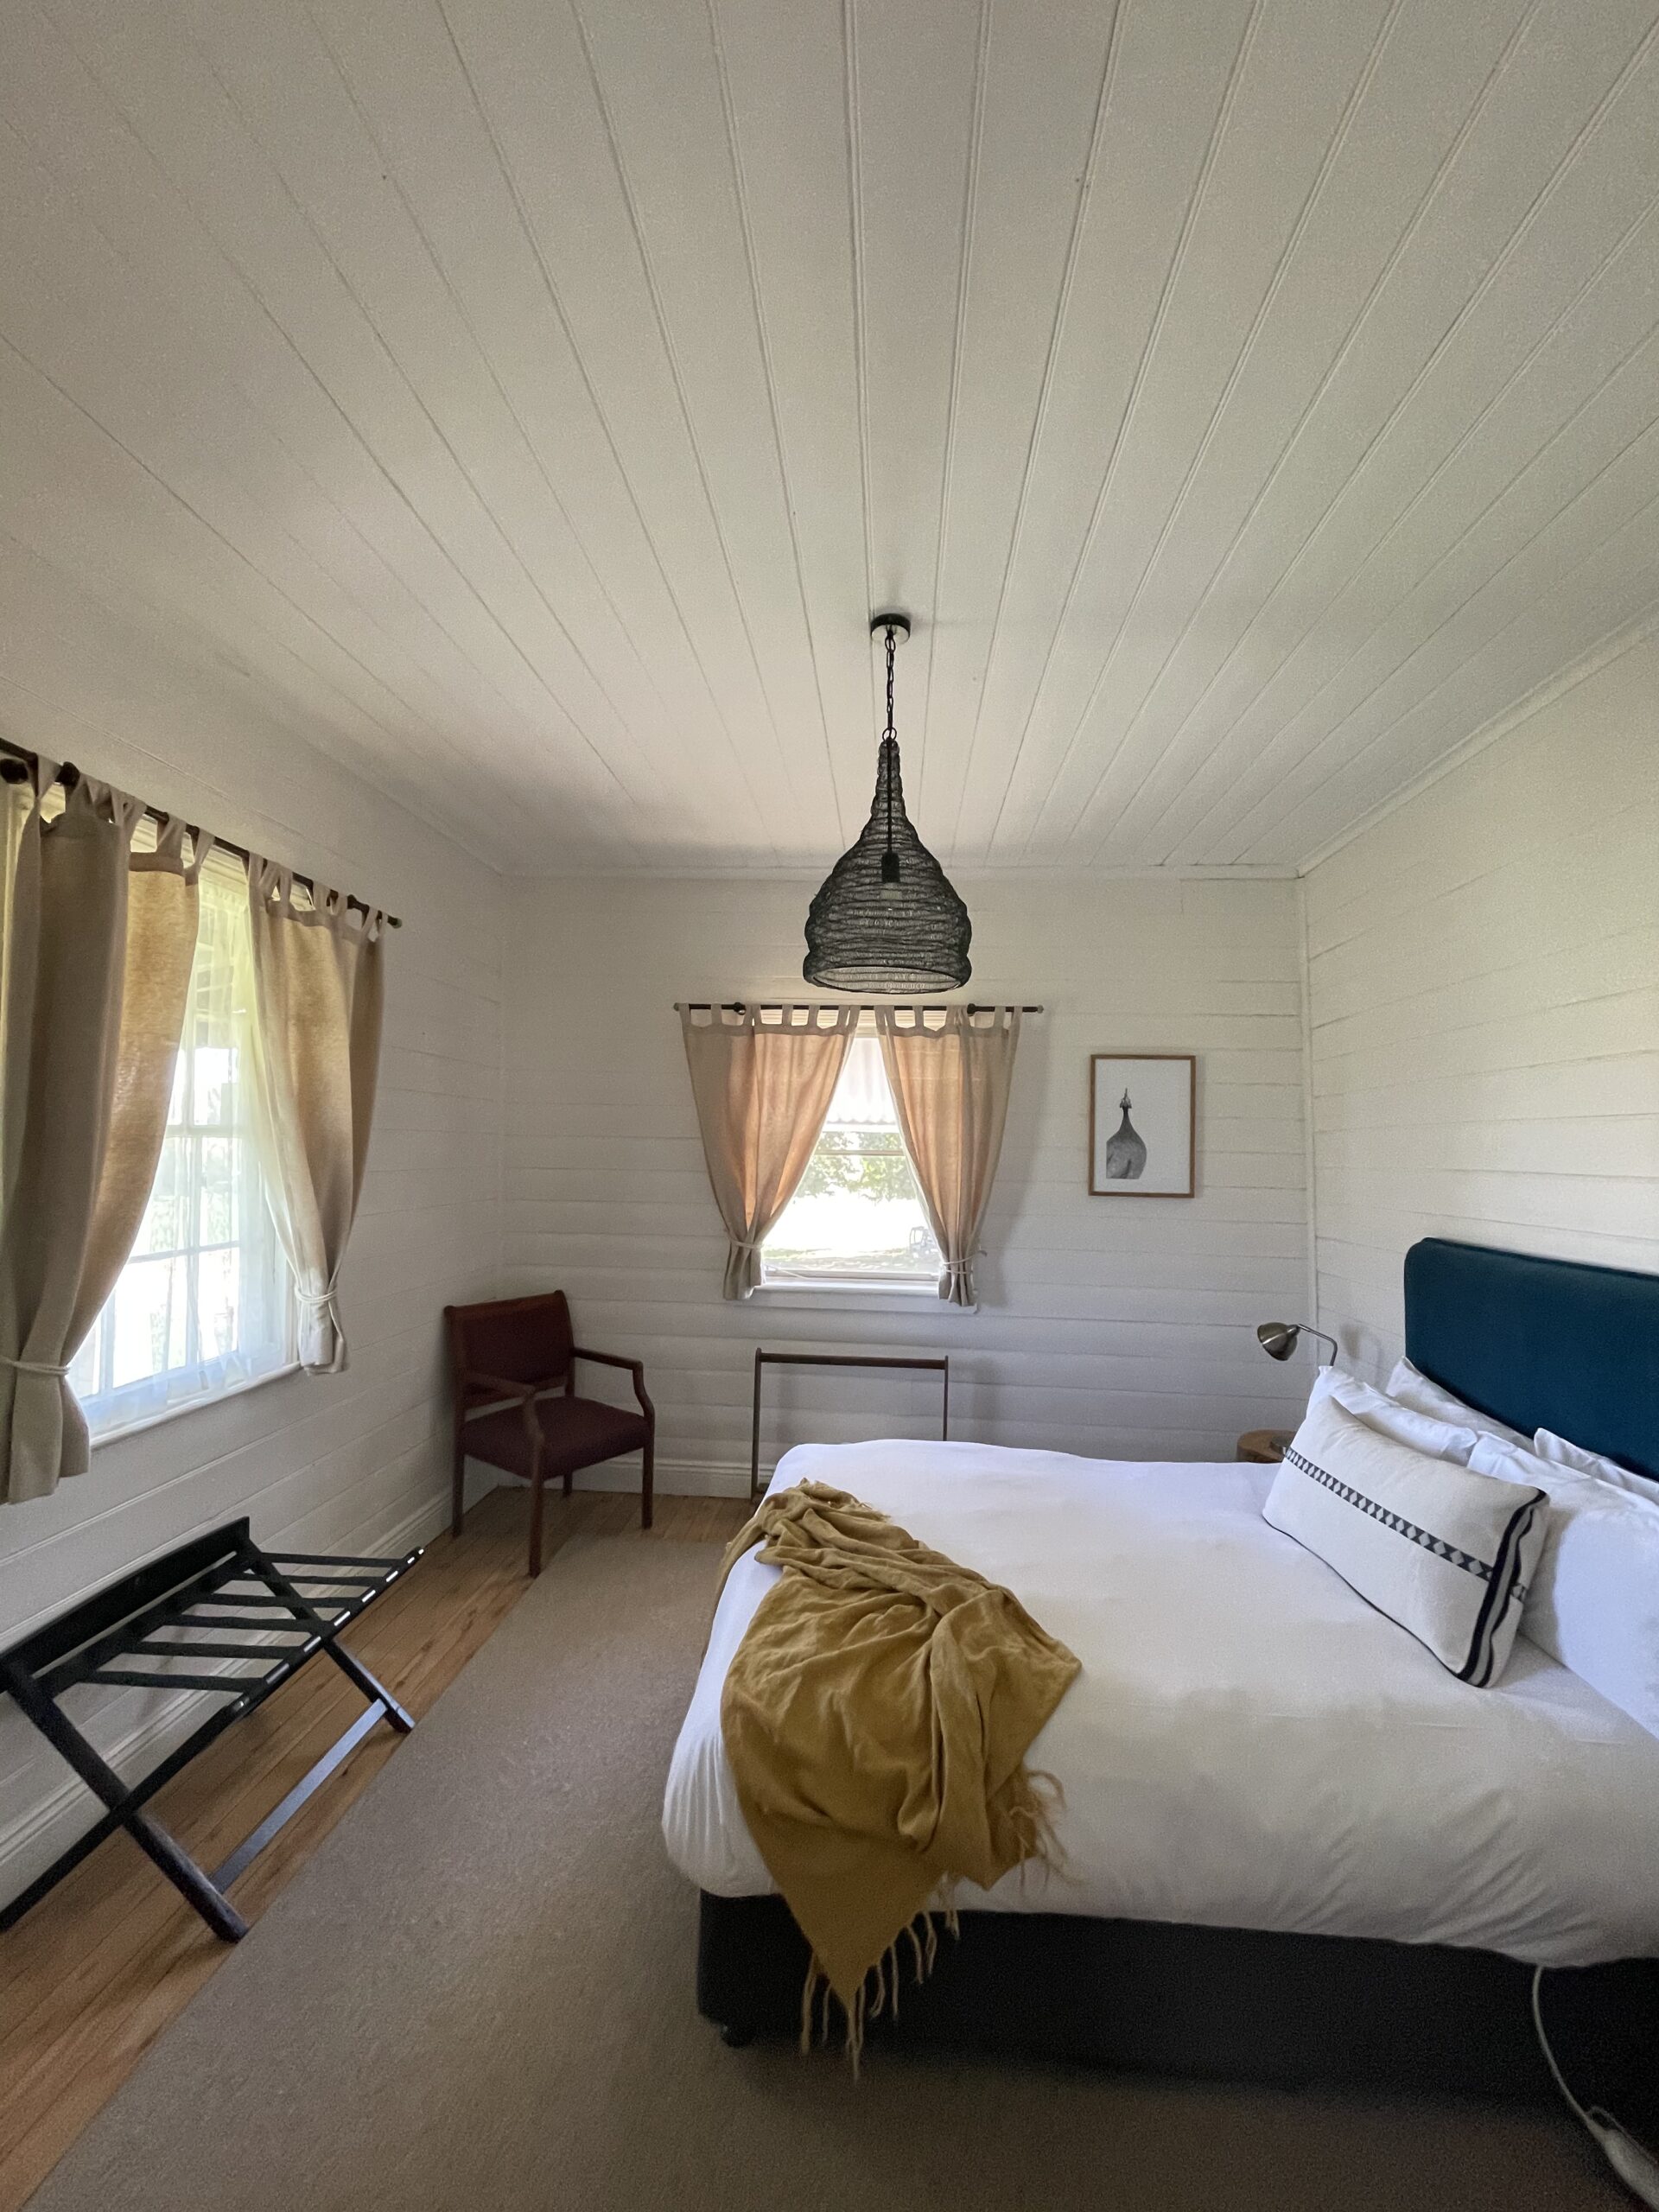 Daleys cottage farm stay cottage bedroom